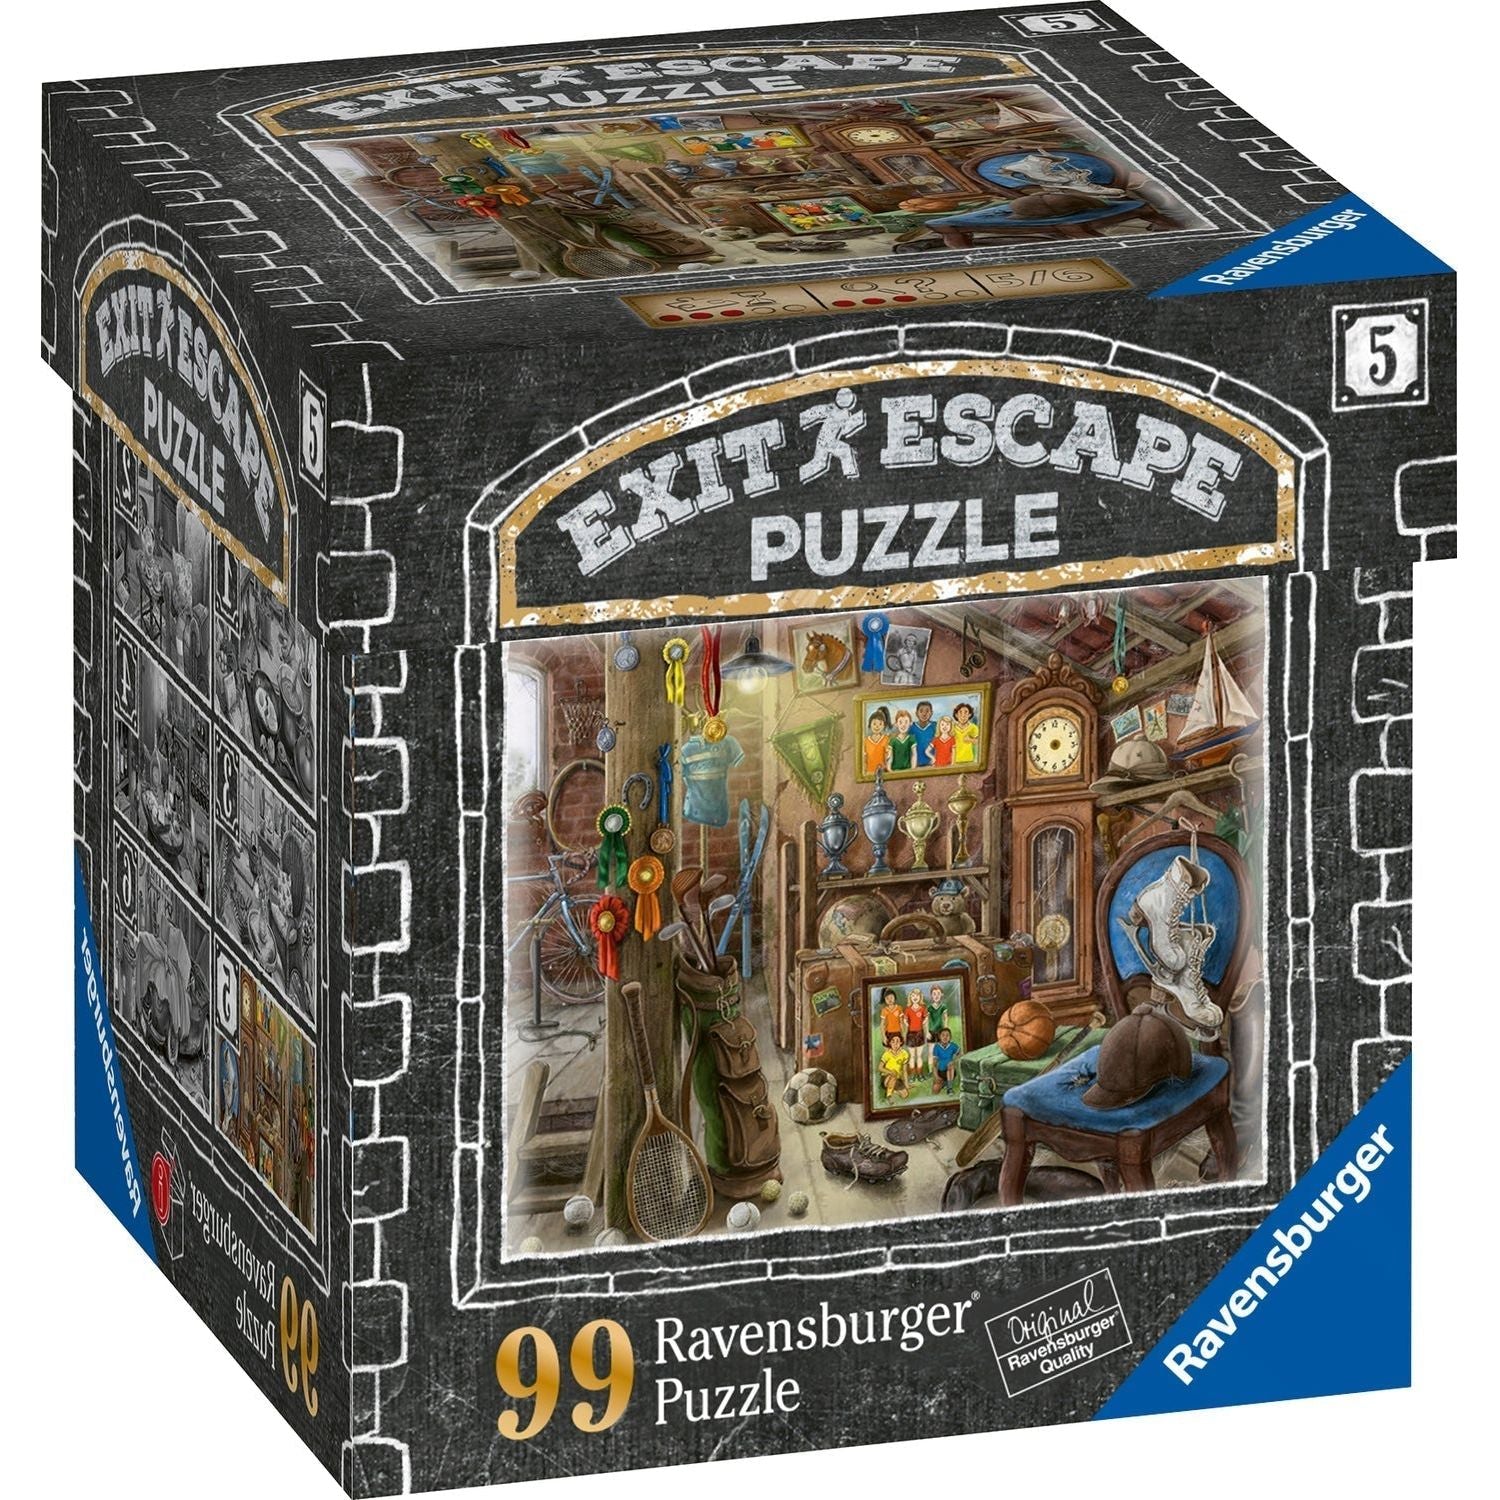 Ravensburger Exit Escape Puzzle 99 Pieces The Attic – The Rocking